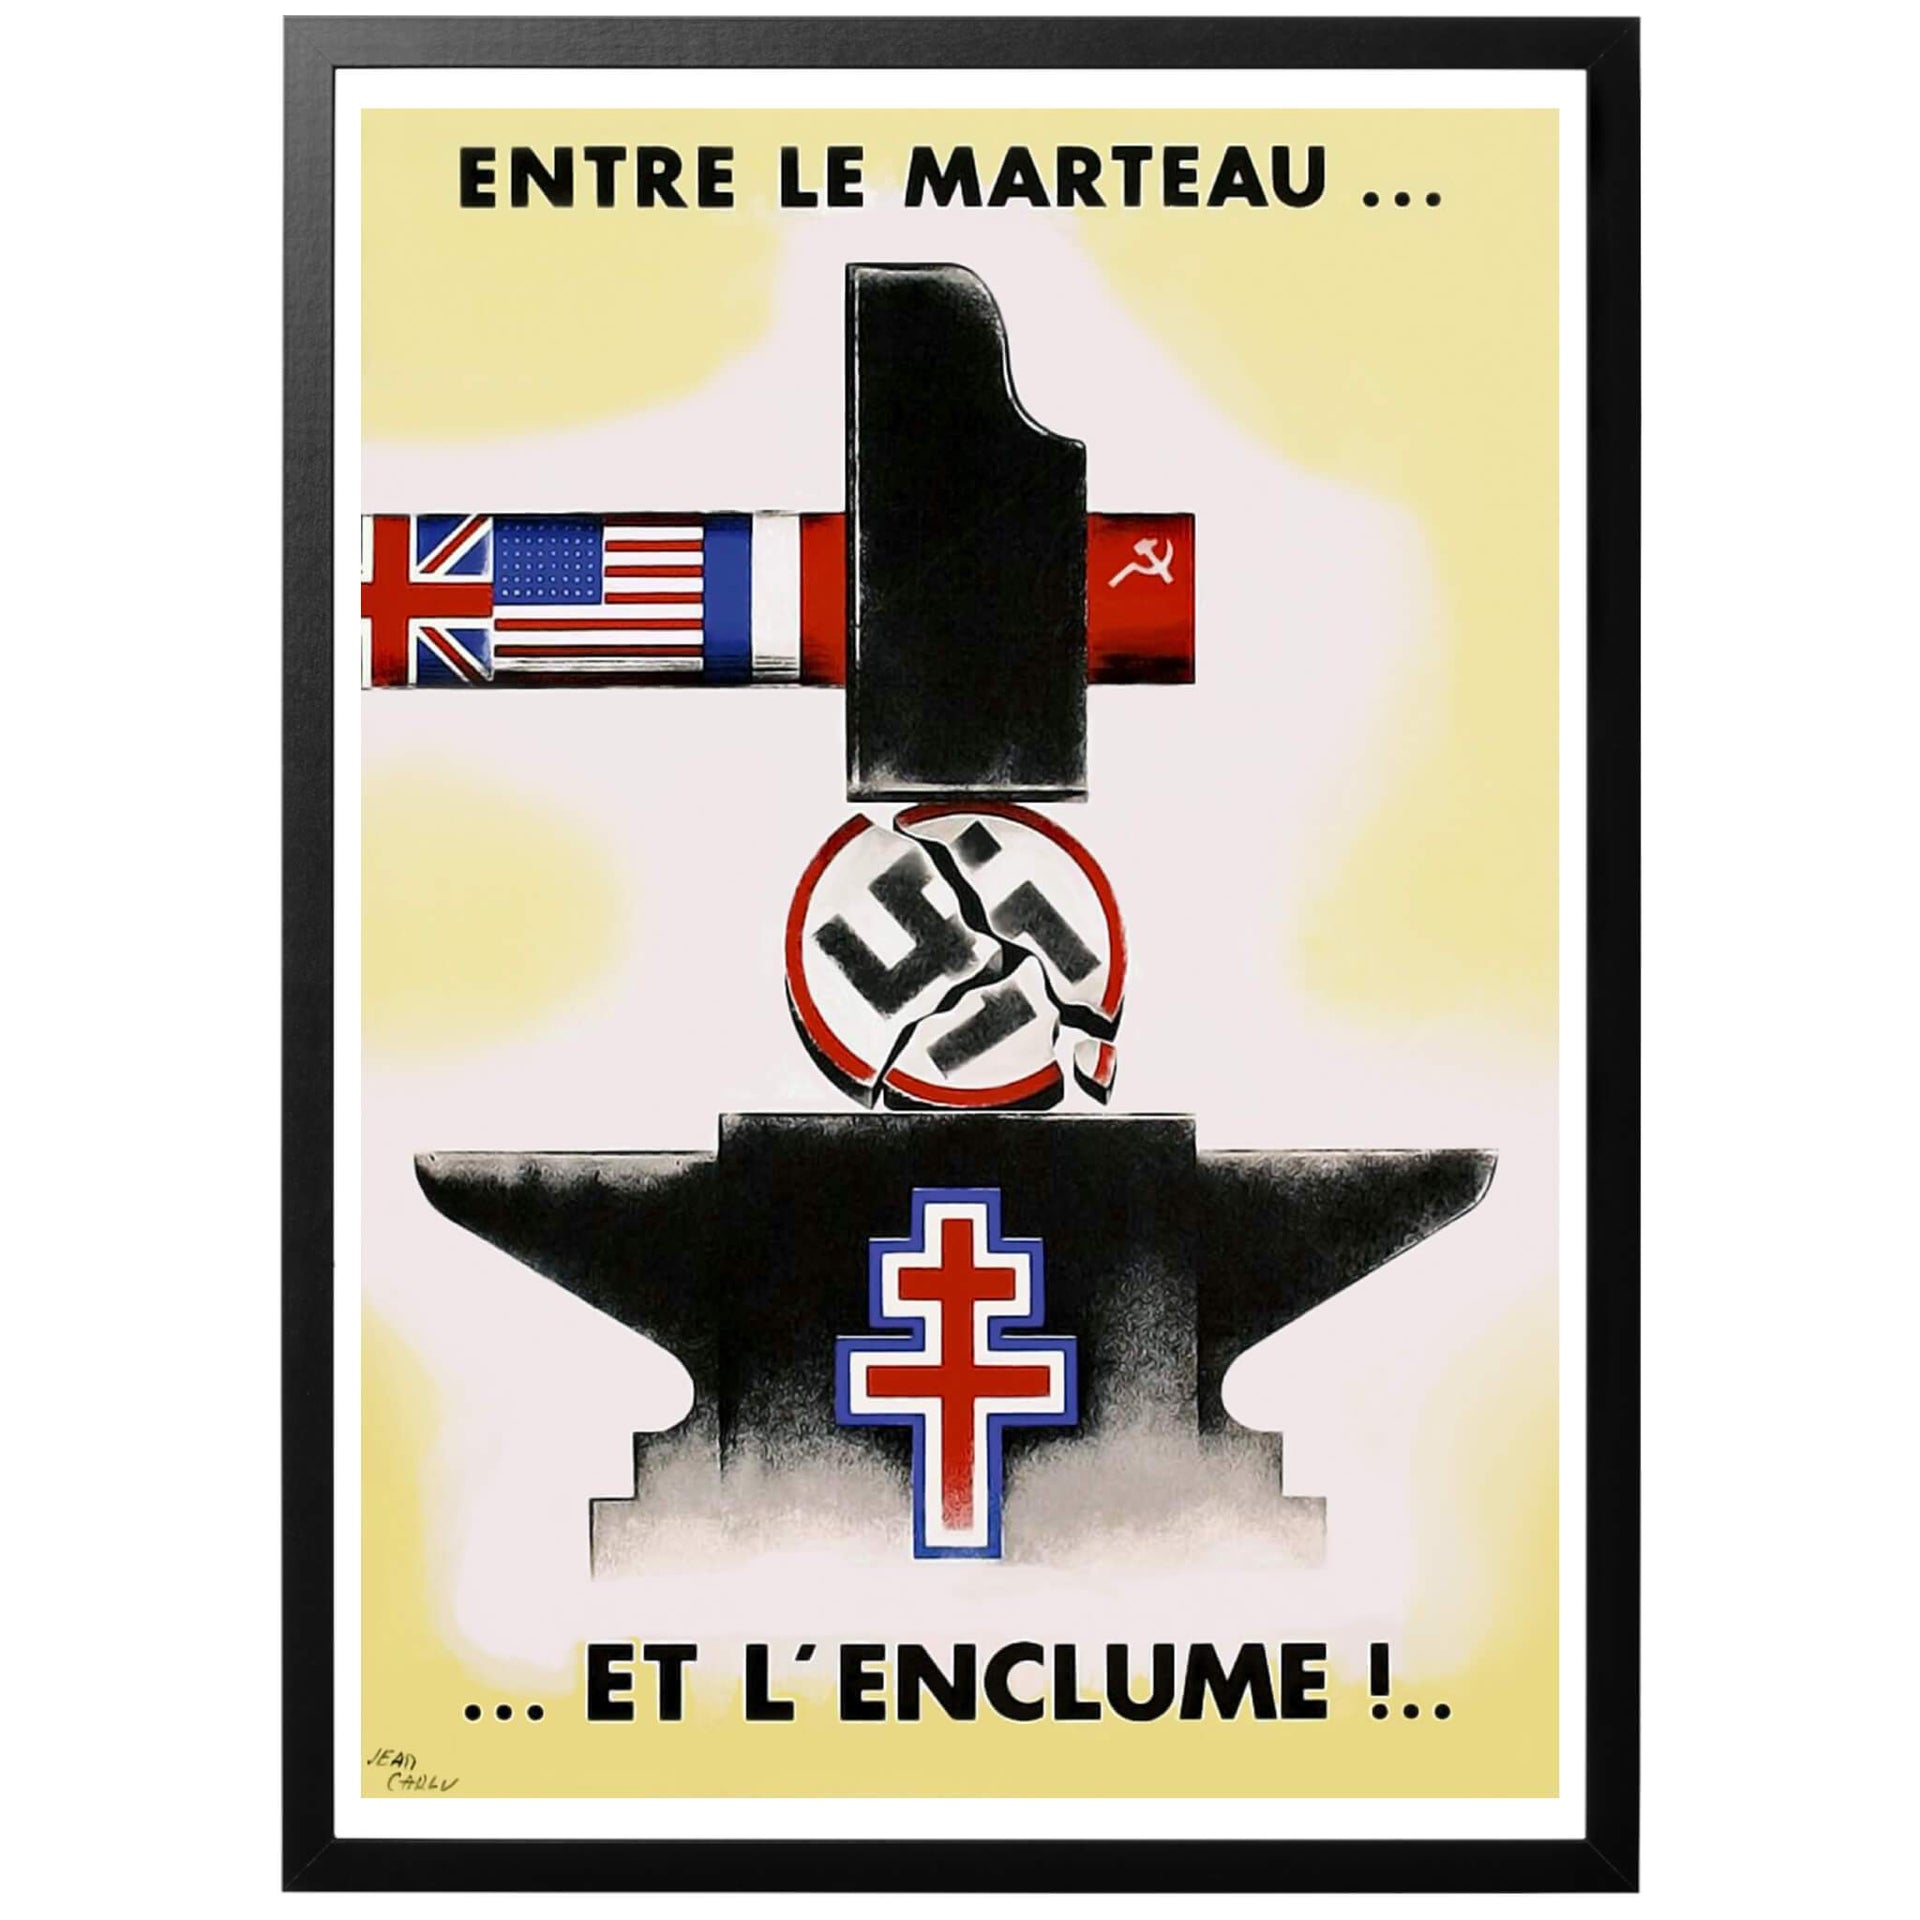 Propagandaposter från Fria franska styrkorna (FFL - Forces Françaises Libres), en styrka som bildats utomlands av flyende franska soldater. De utrustades med amerikansk utrustning och var med vid landstigningen juni 1944 där de främst är kända för intagandet av Paris några månader senare.